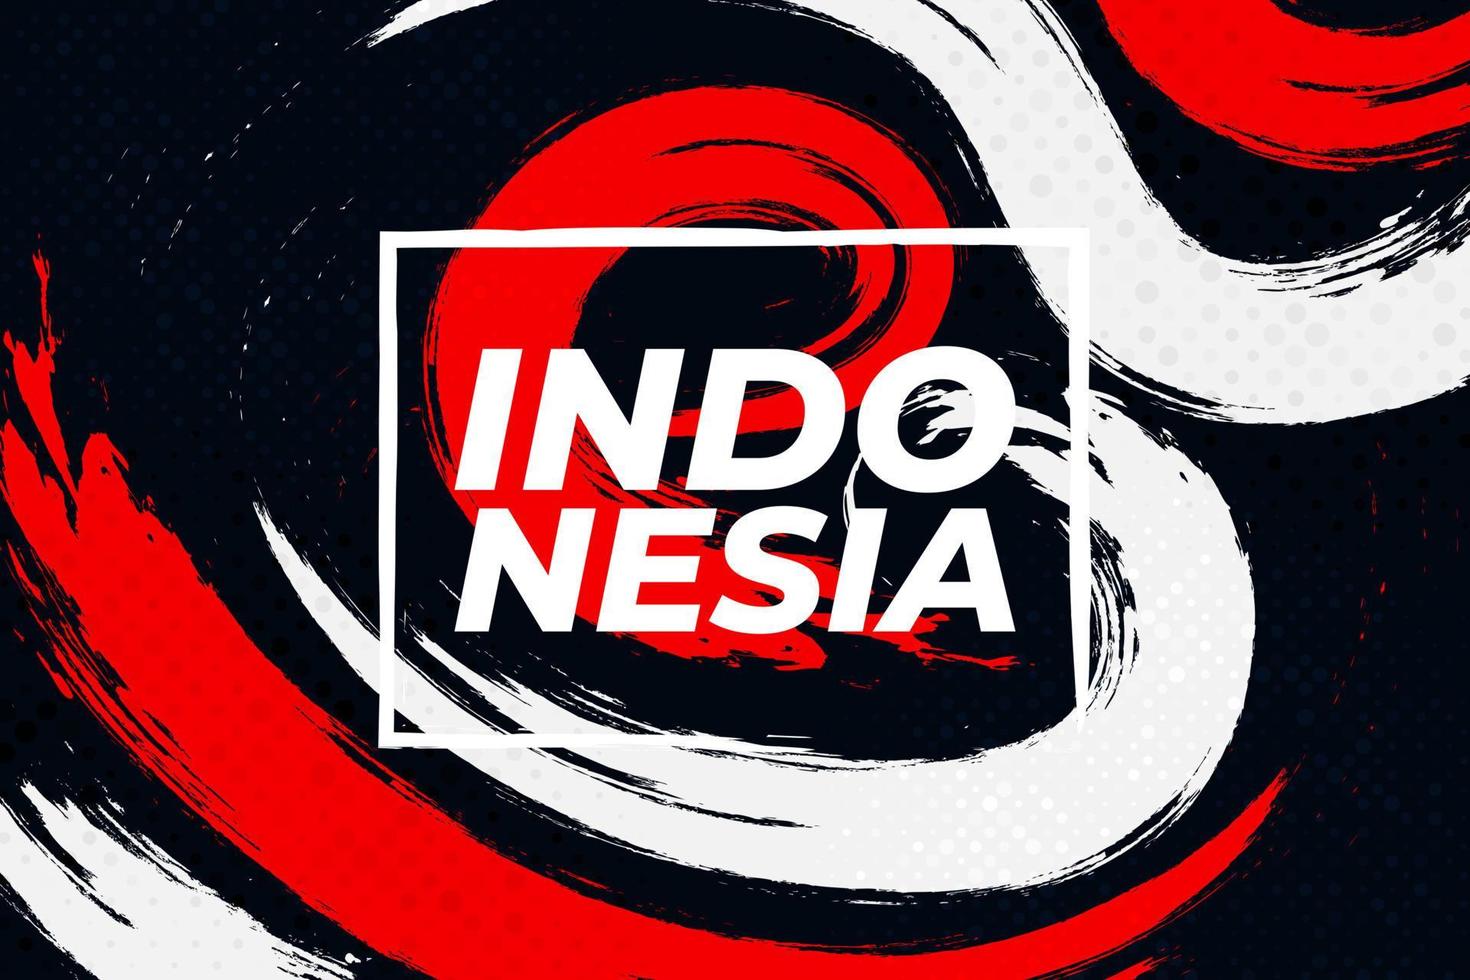 bandera de indonesia con concepto de pincel. feliz día de la independencia de indonesia. bandera de indonesia en estilo grunge vector